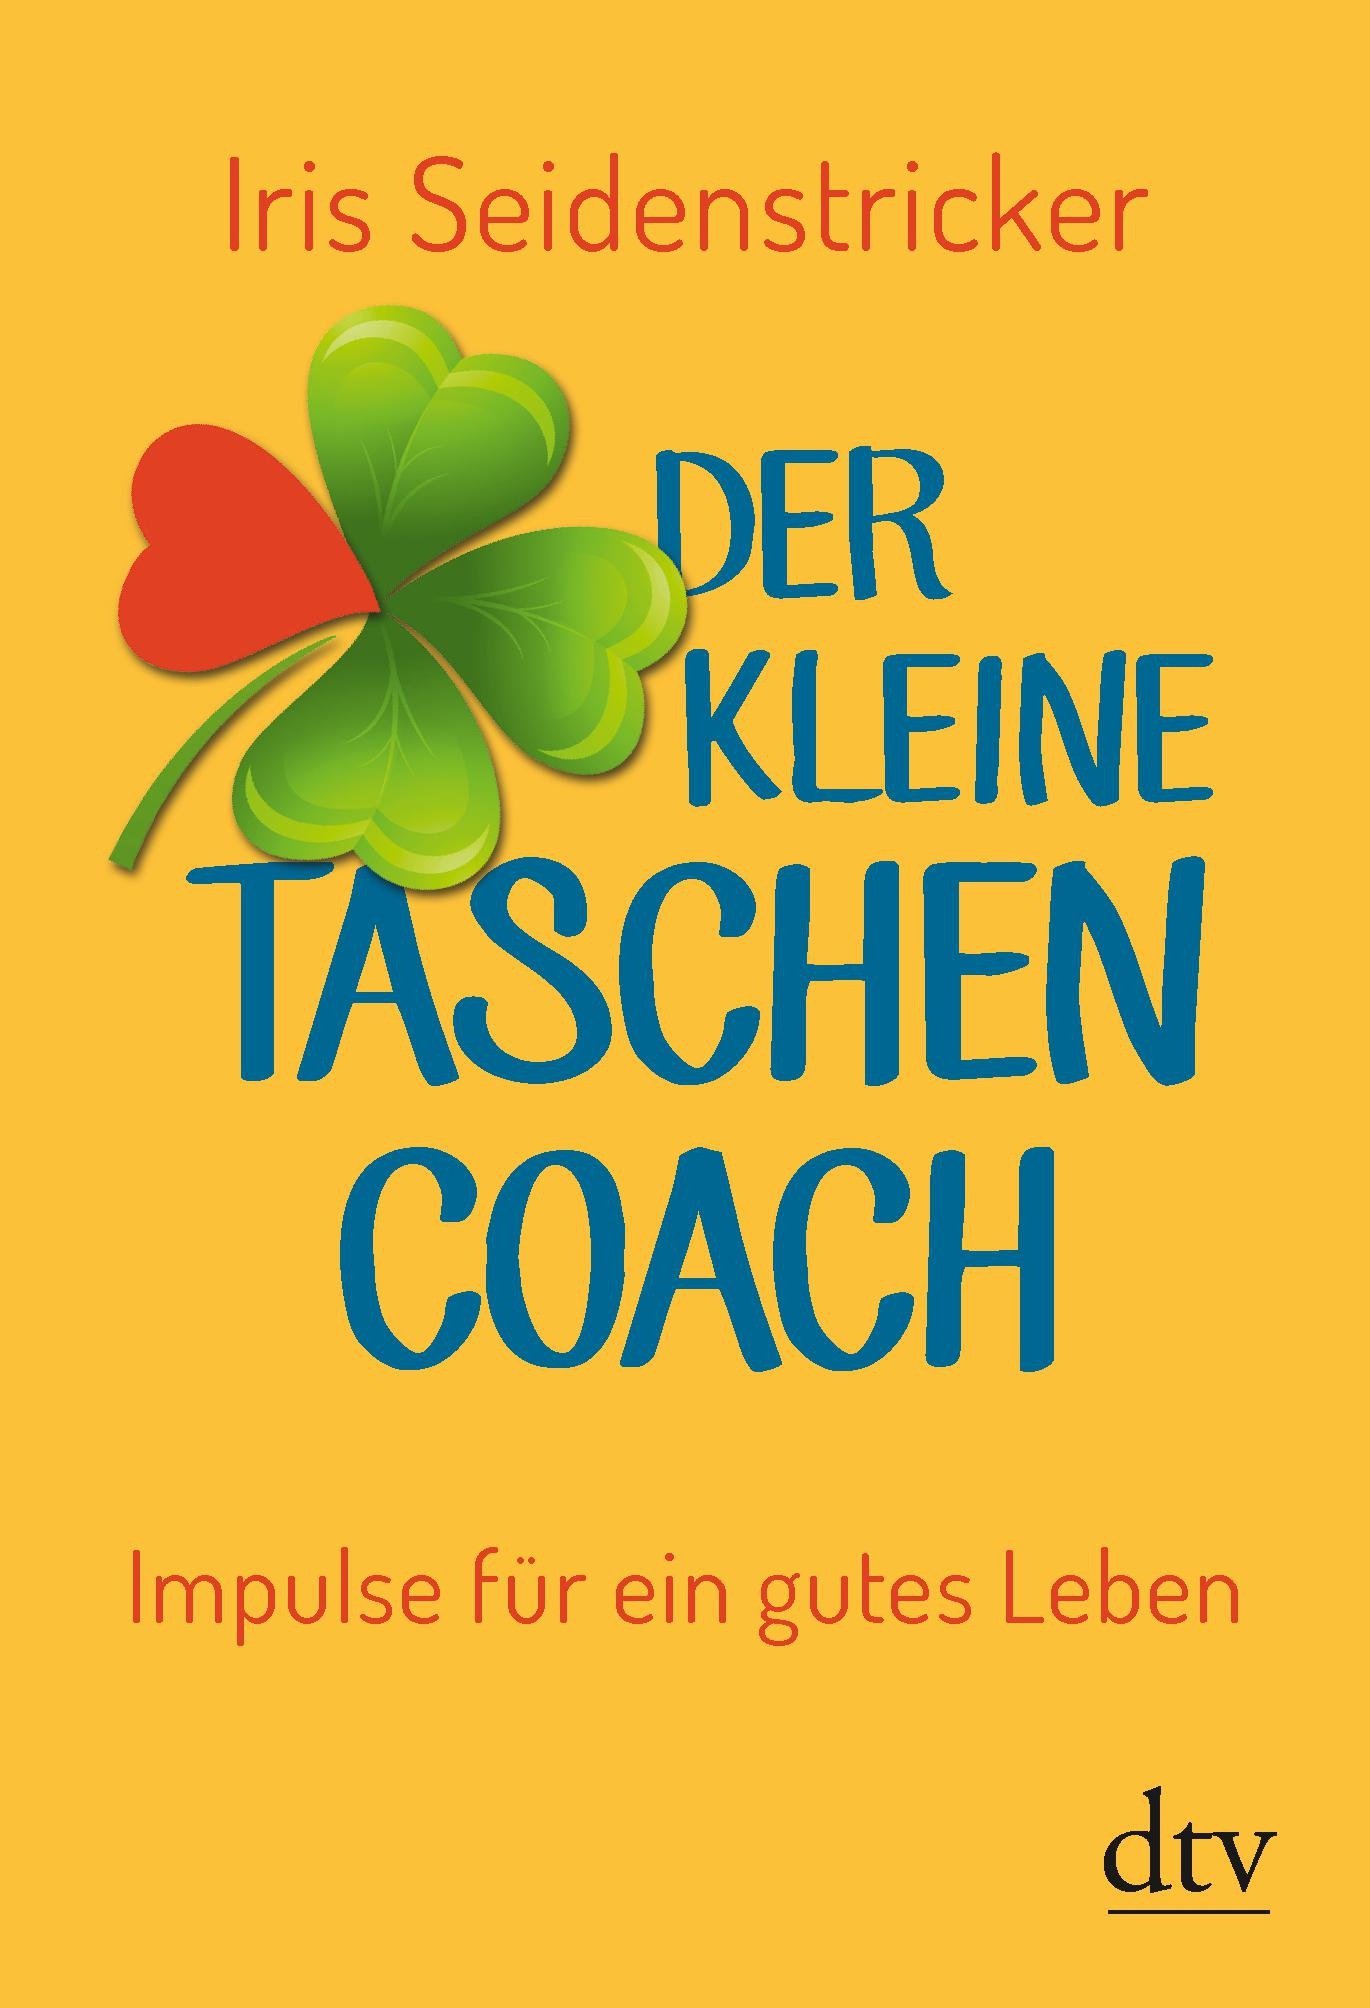 taschen-coach